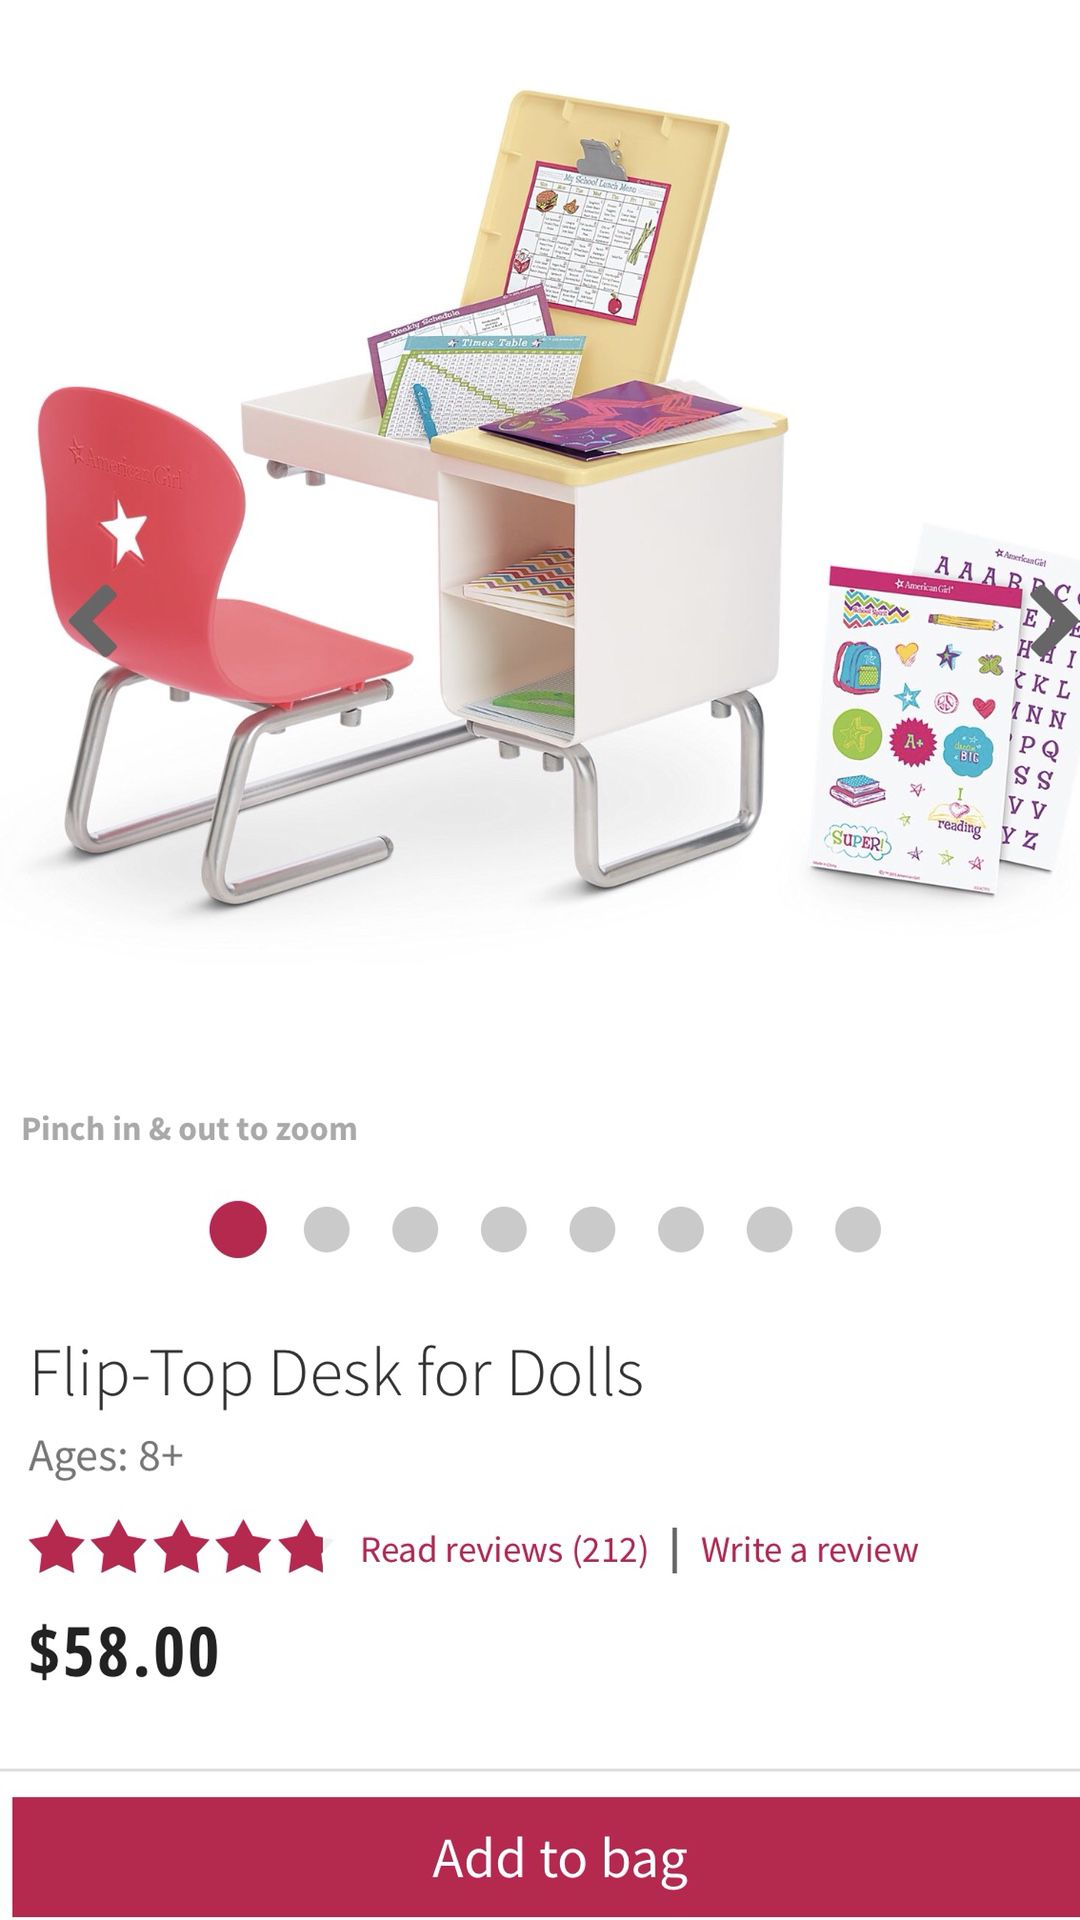 American Girl - Flip-Top Desk for Dolls